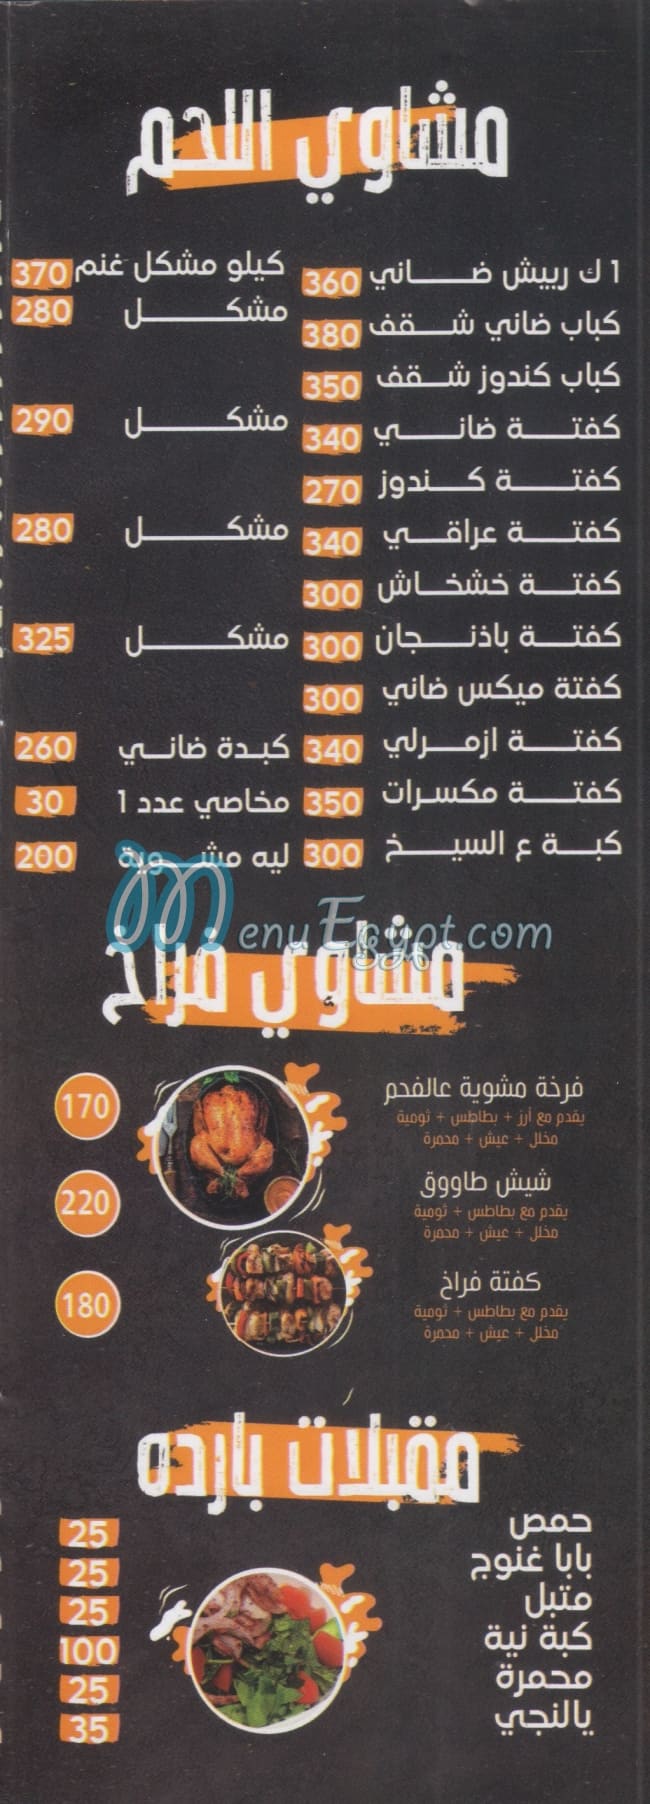 رقم البرنس كريش مصر